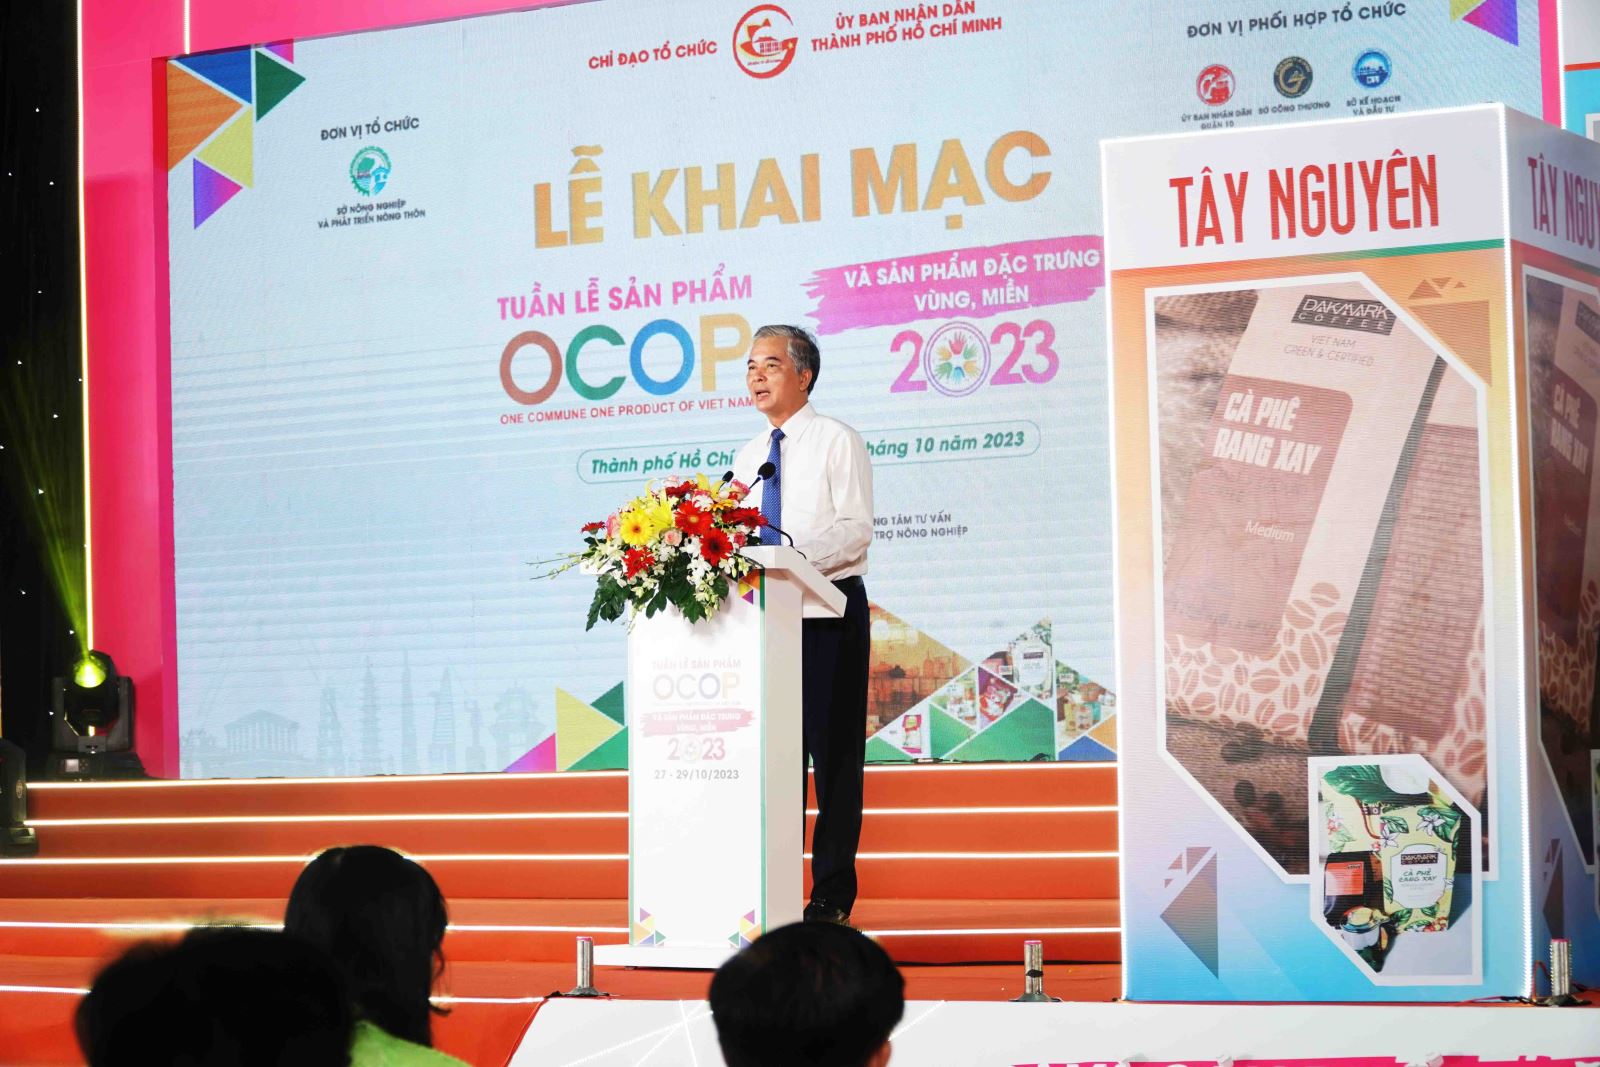 Ông Ngô Minh Châu - Phó chủ tịch UBND Thành phố Hồ Chí Minh, phát biểu tại buổi Lễ